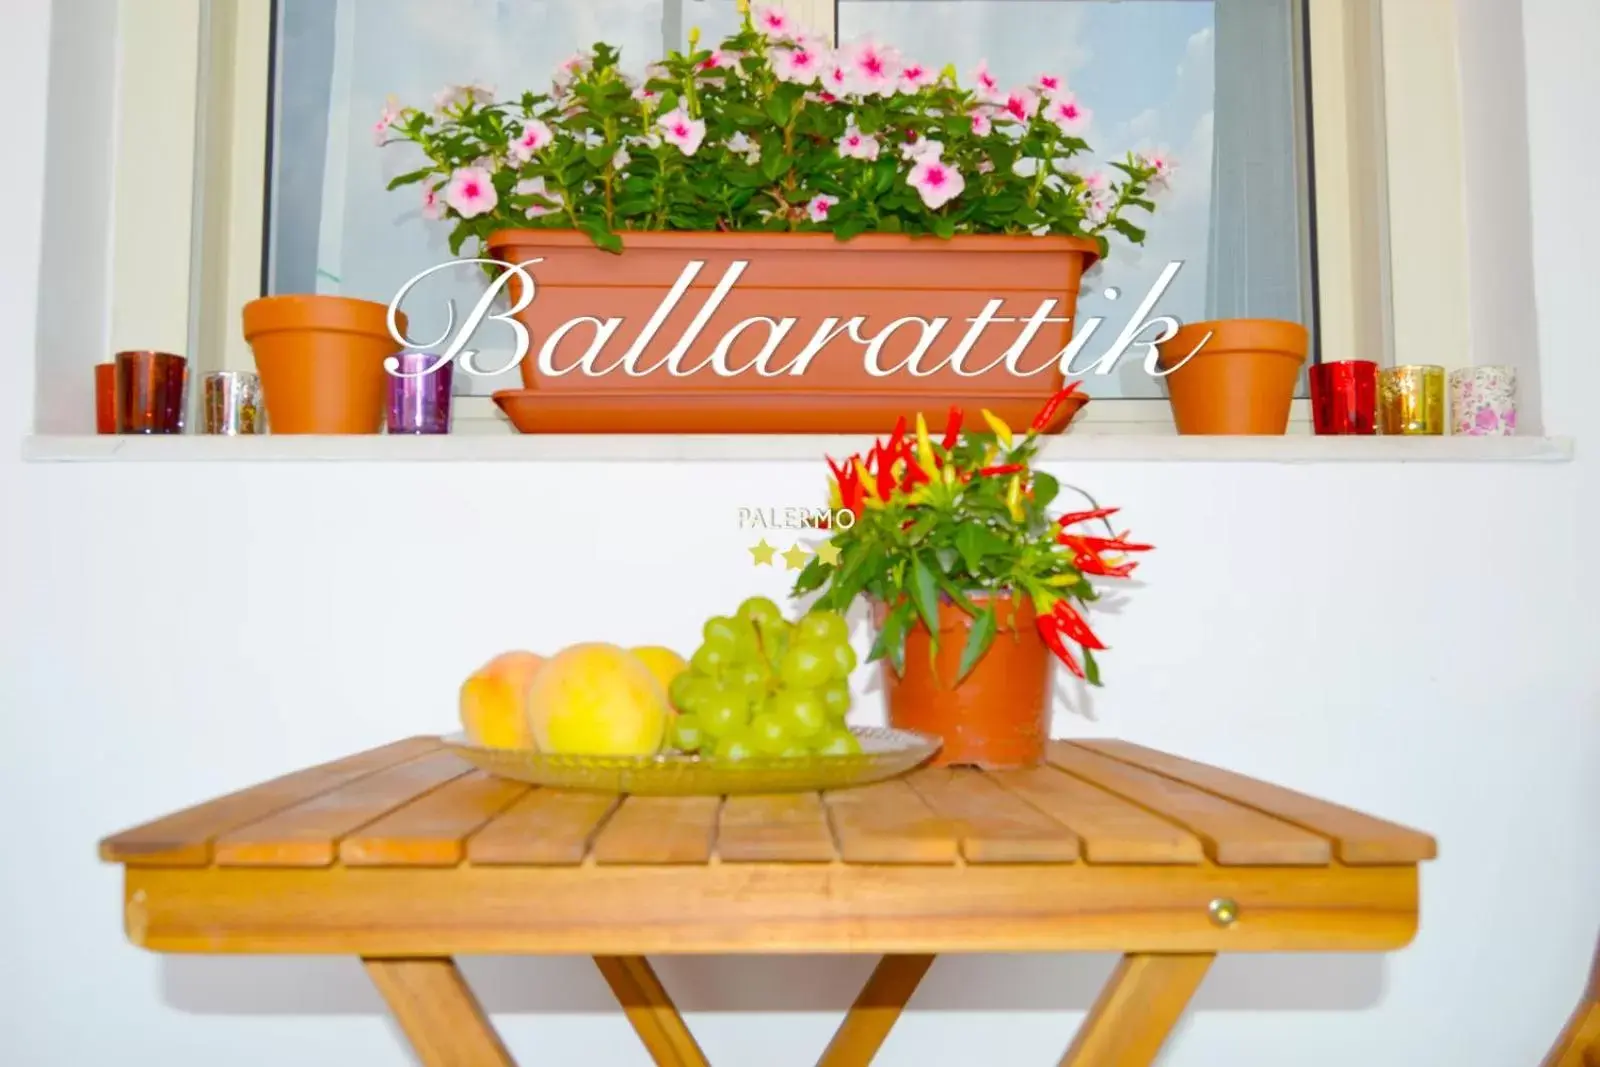 Balcony/Terrace in Ballarattik